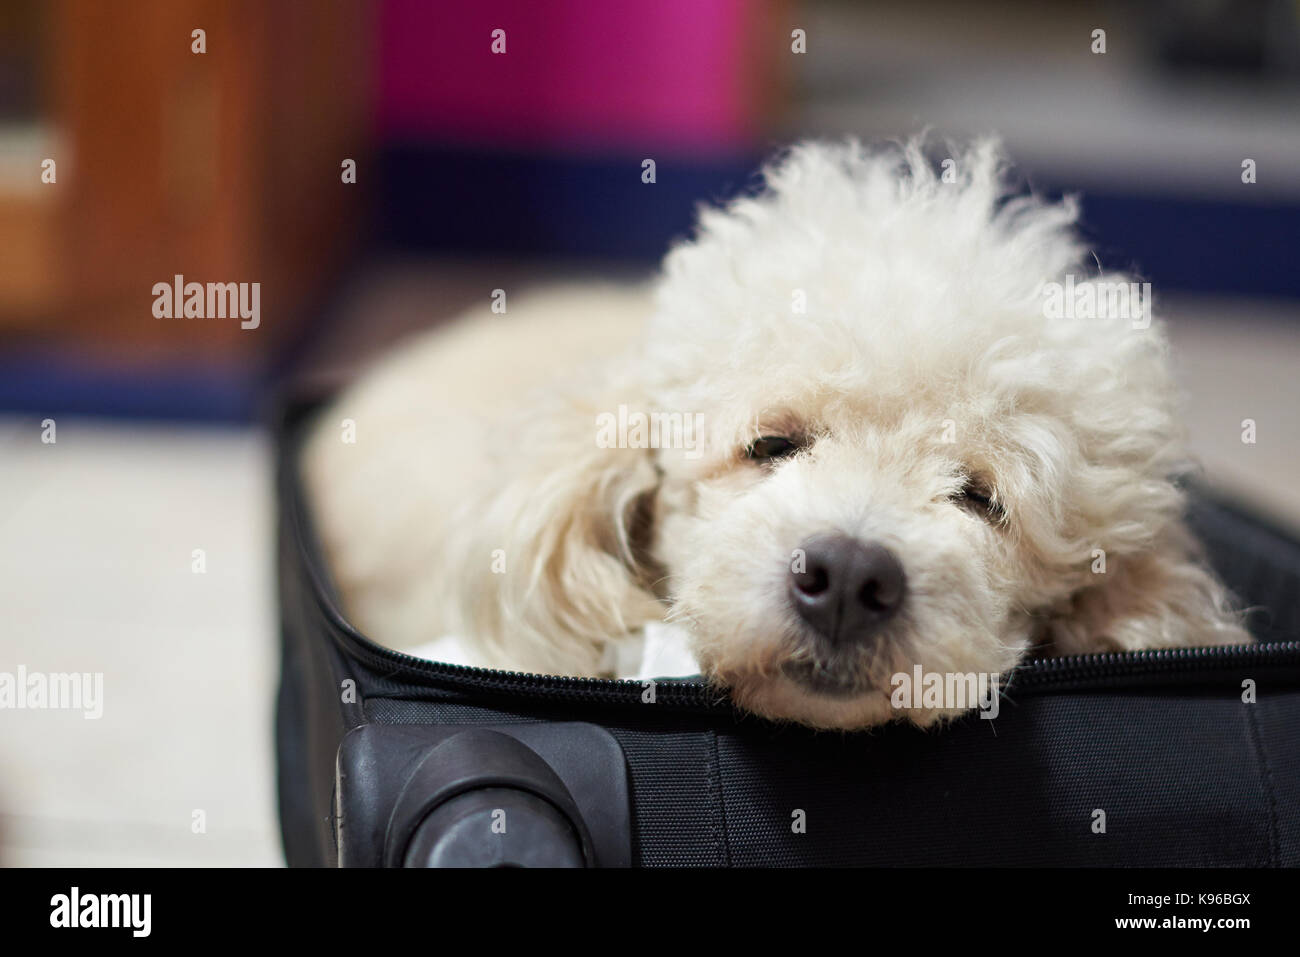 Close-up of dog sleeping inside black suitcase Stock Photo